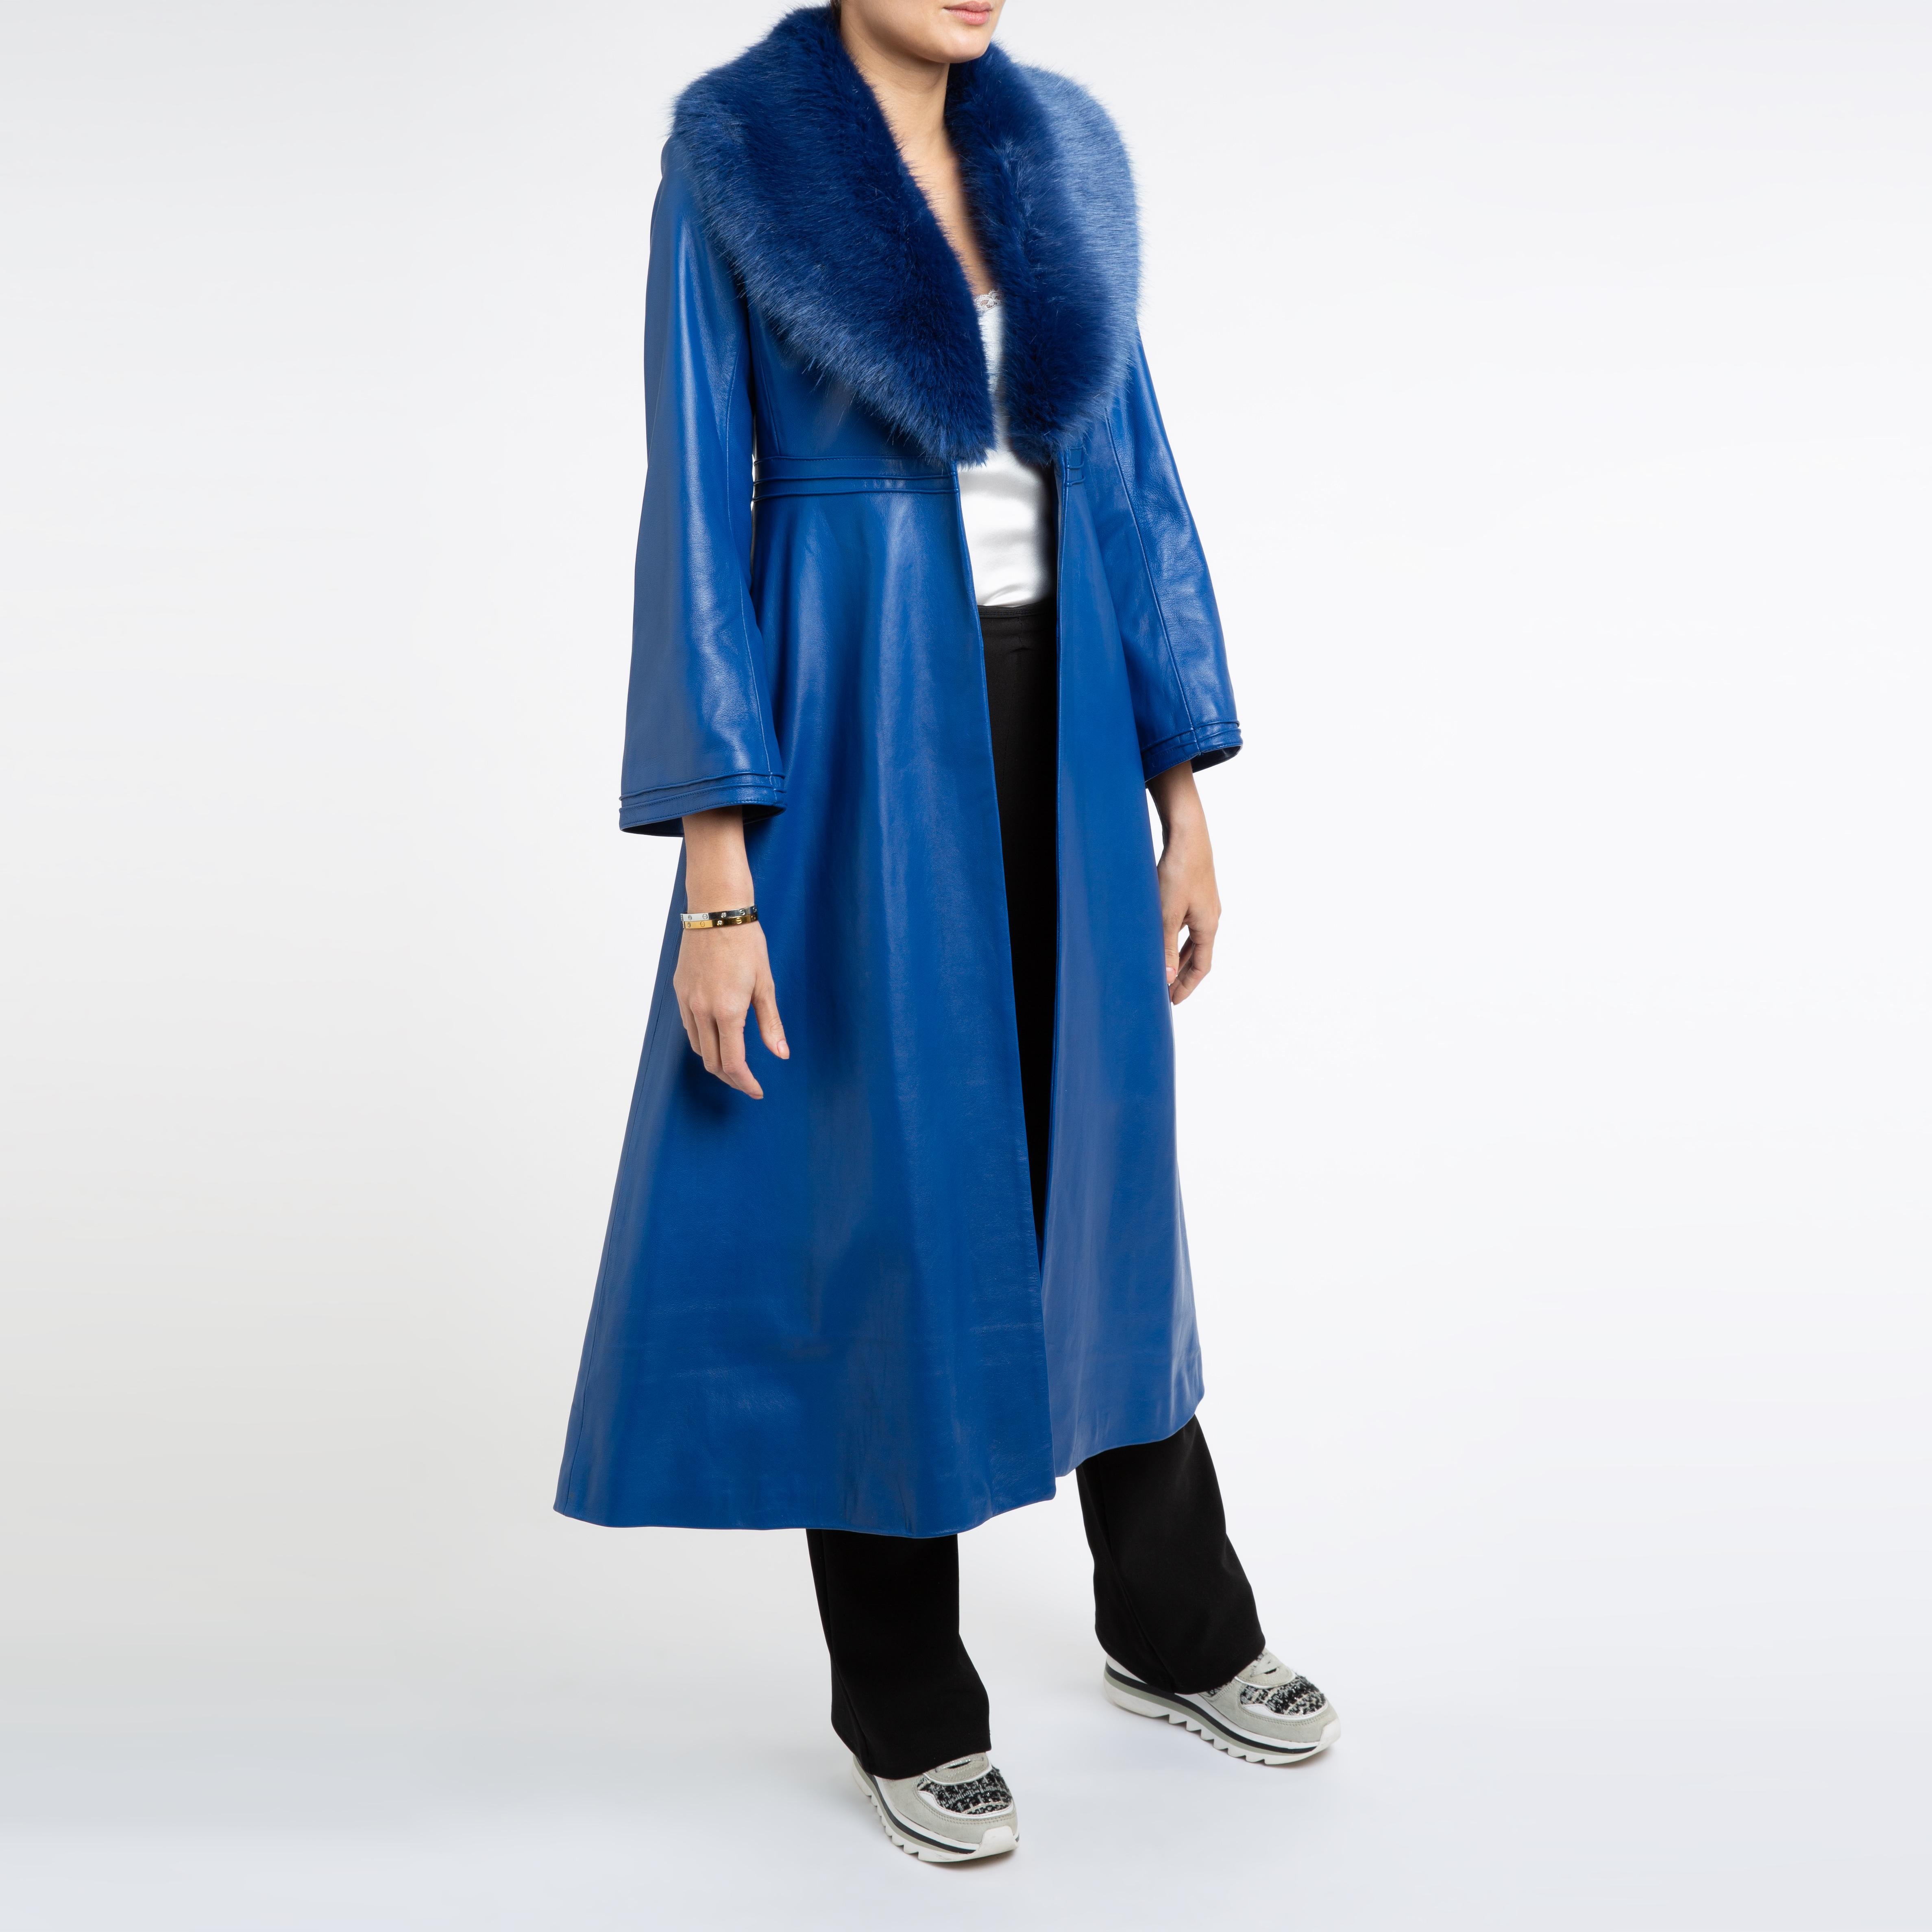 Verheyen London Edward Leather Coat in Blue with Faux Fur - Size uk 14 For Sale 4